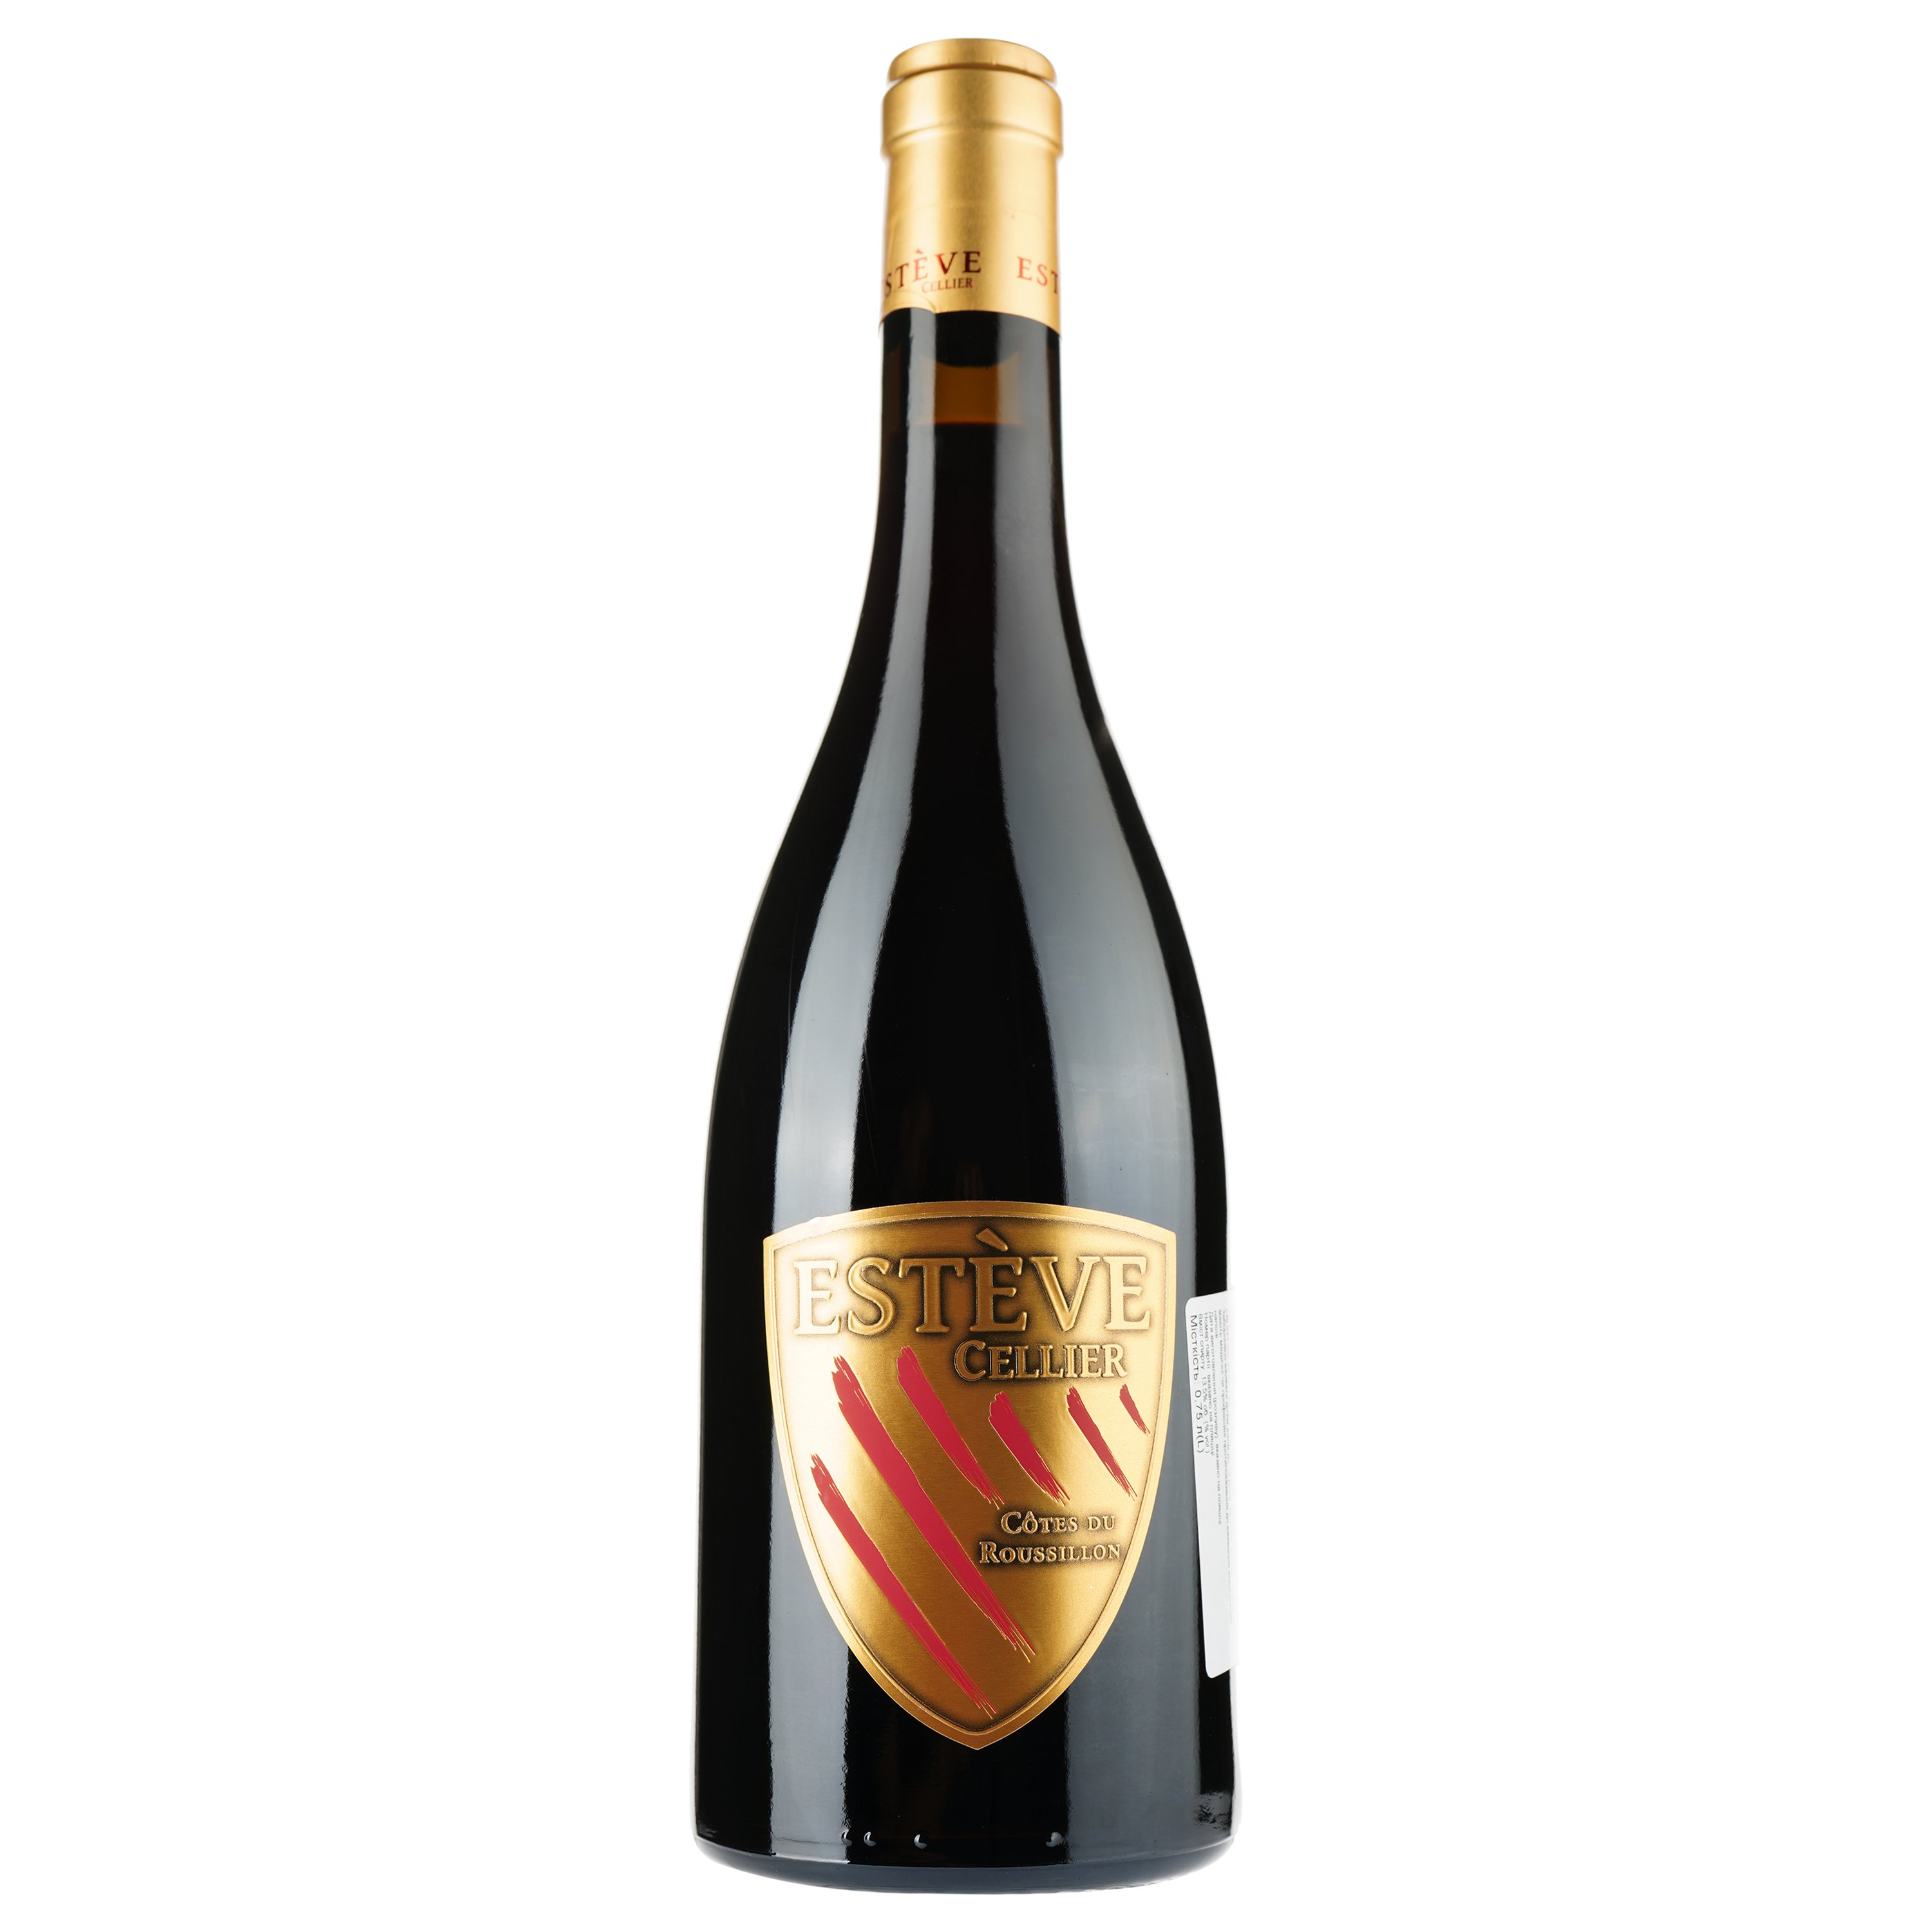 Вино Esteve Cellier Rouge 2019 AOP Cotes du Roussillon, красное, сухое, 0.75 л - фото 1